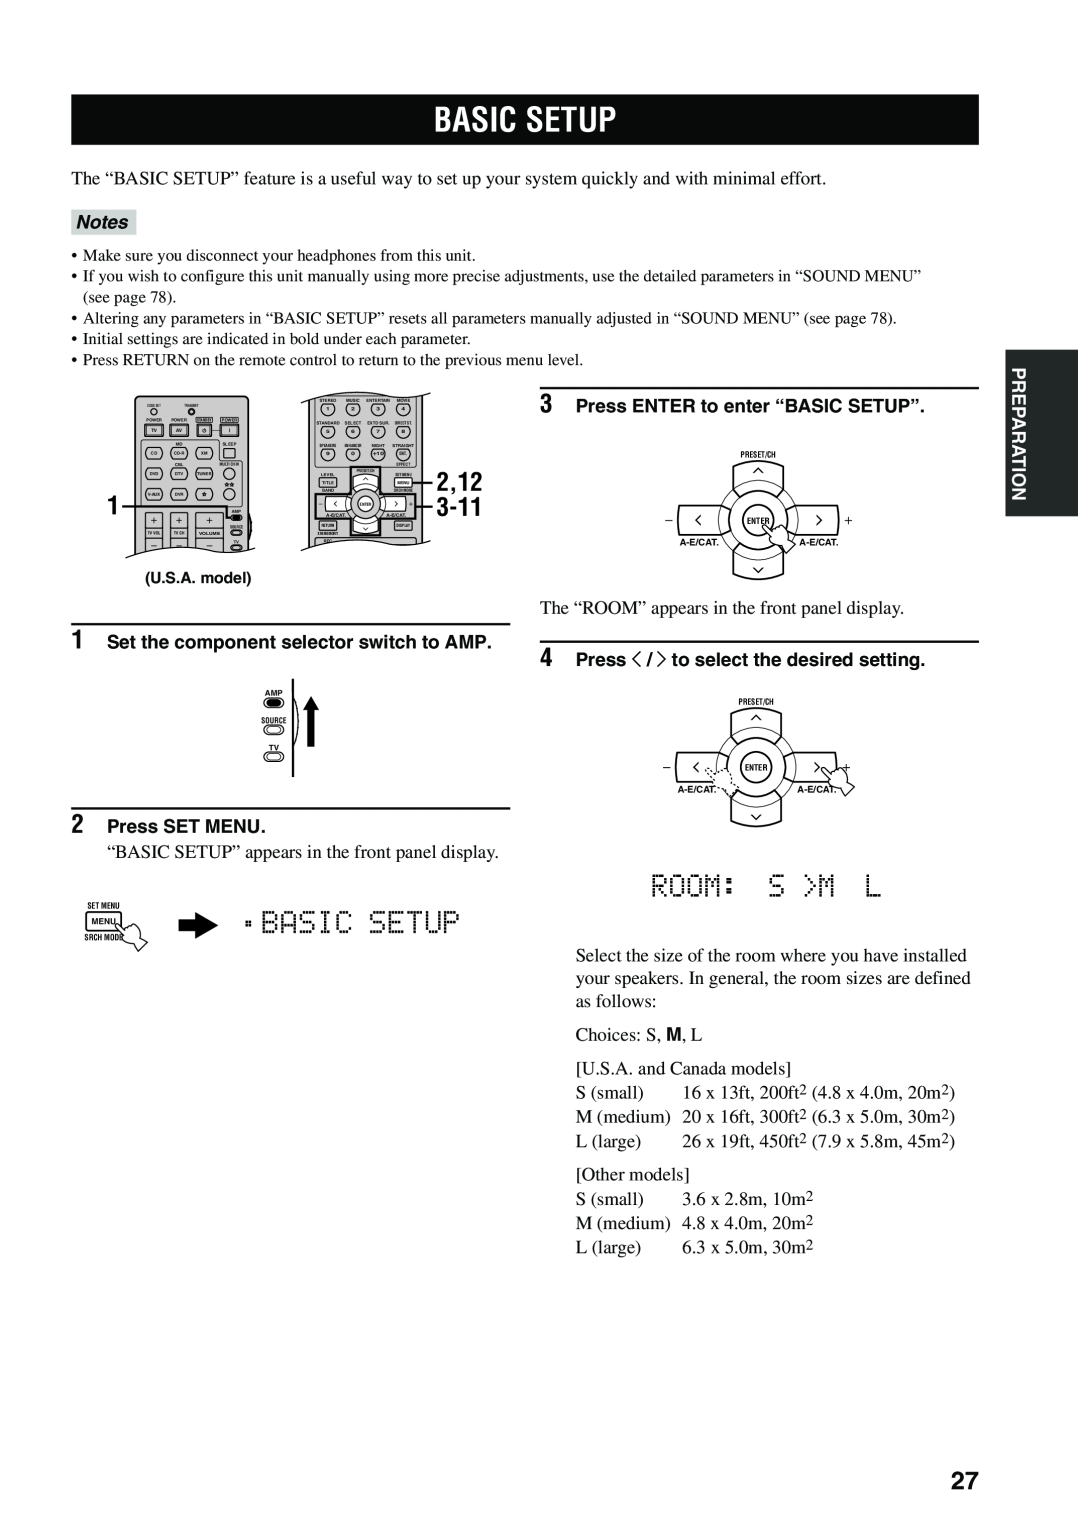 Yamaha HTR-5940 owner manual Basic Setup, Room: S >M L, 2,12, 3-11, Notes 